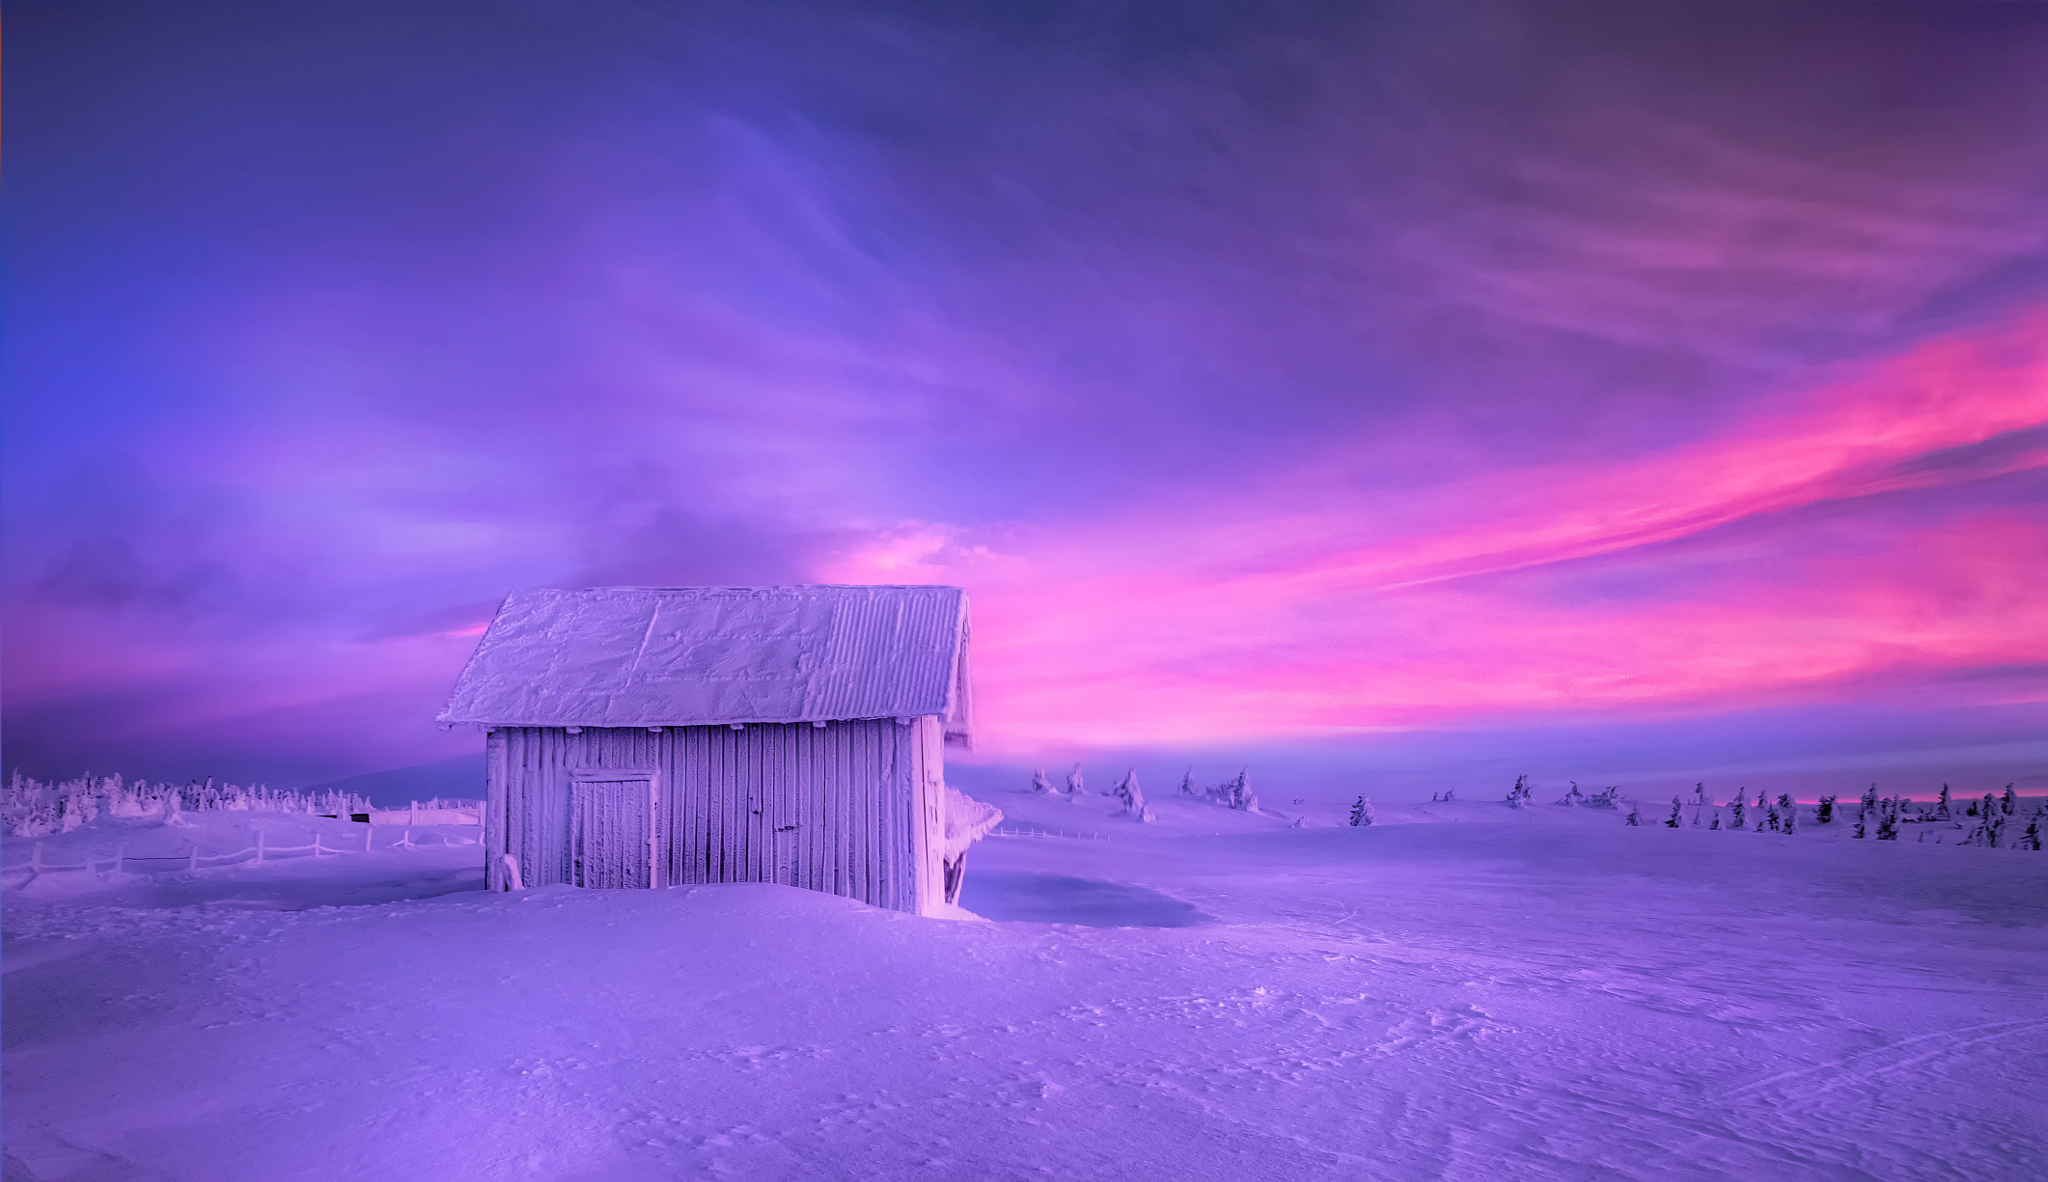 Скачать картинку Зима, Закат, Снег, Земля, Фотографии, Сарай, Пурпурный в телефон бесплатно.